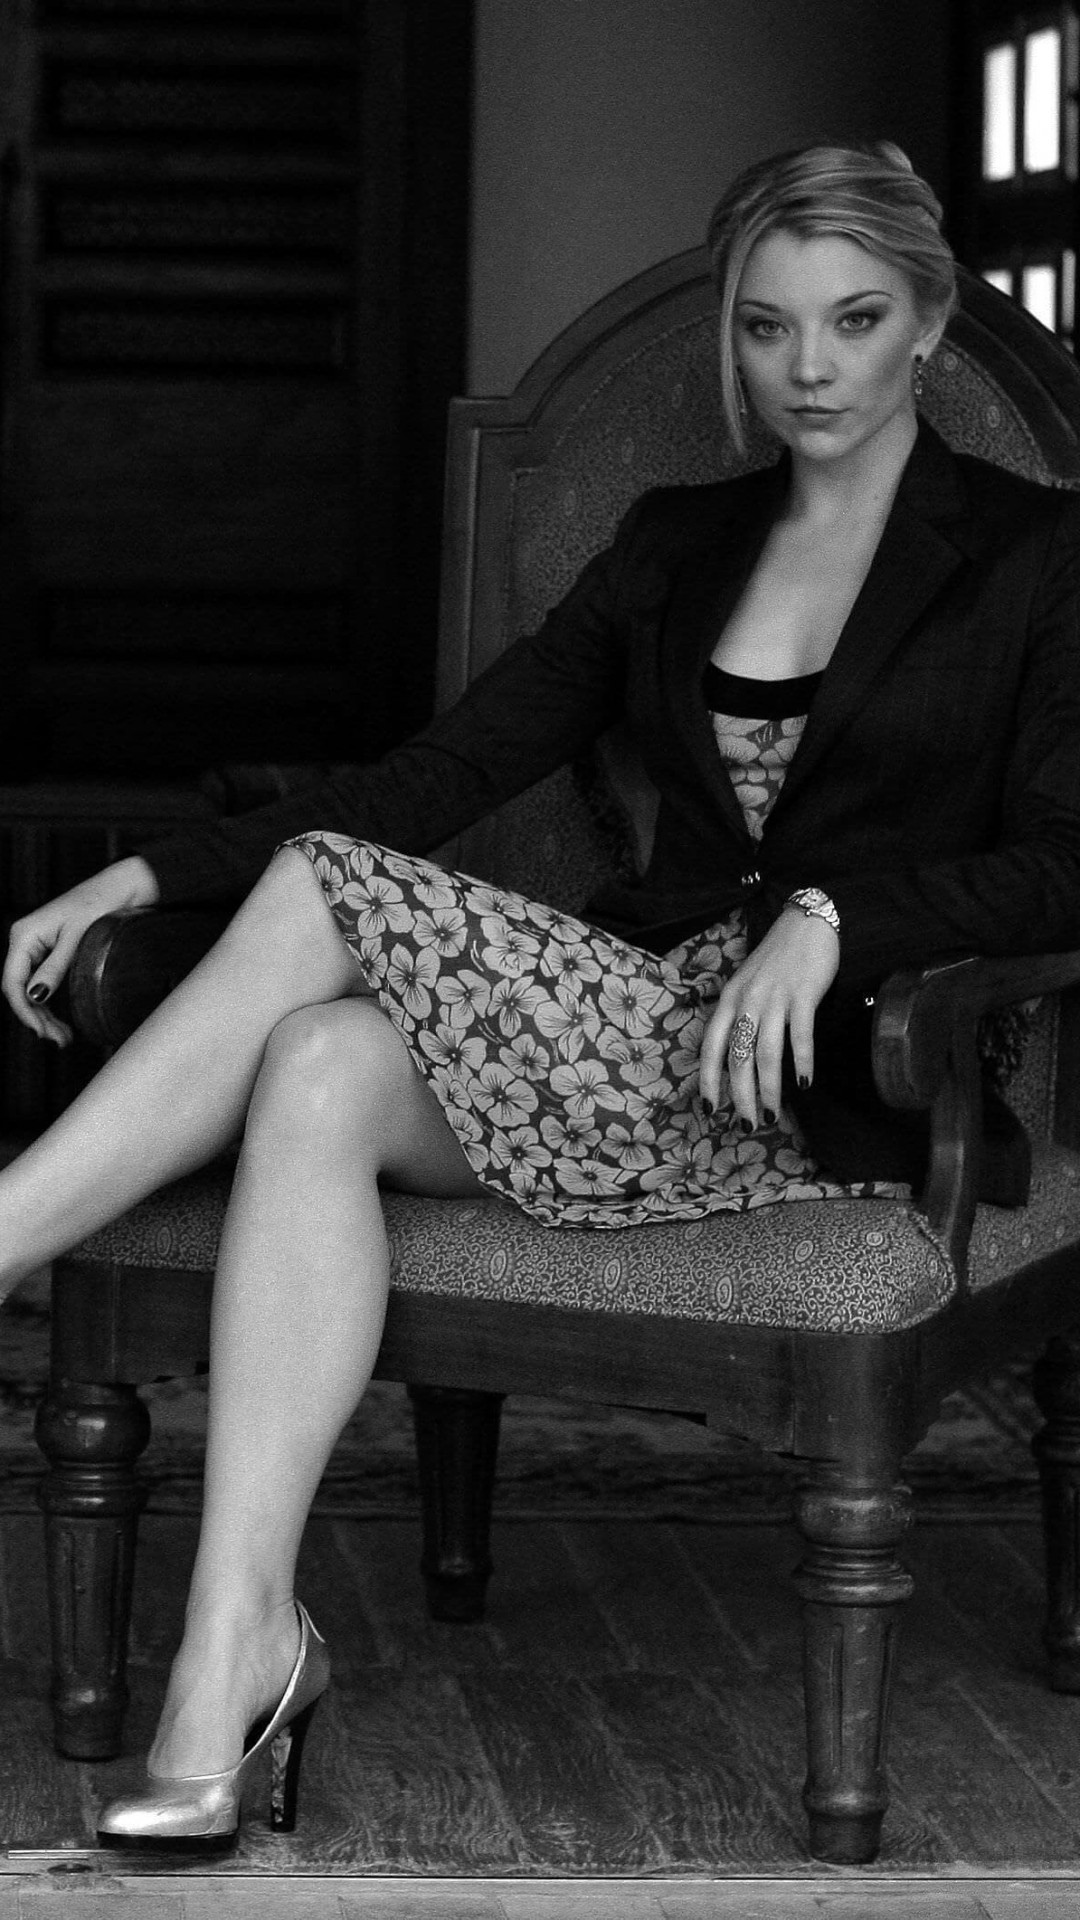 Natalie Dormer in Black & White Wallpaper for LG G2